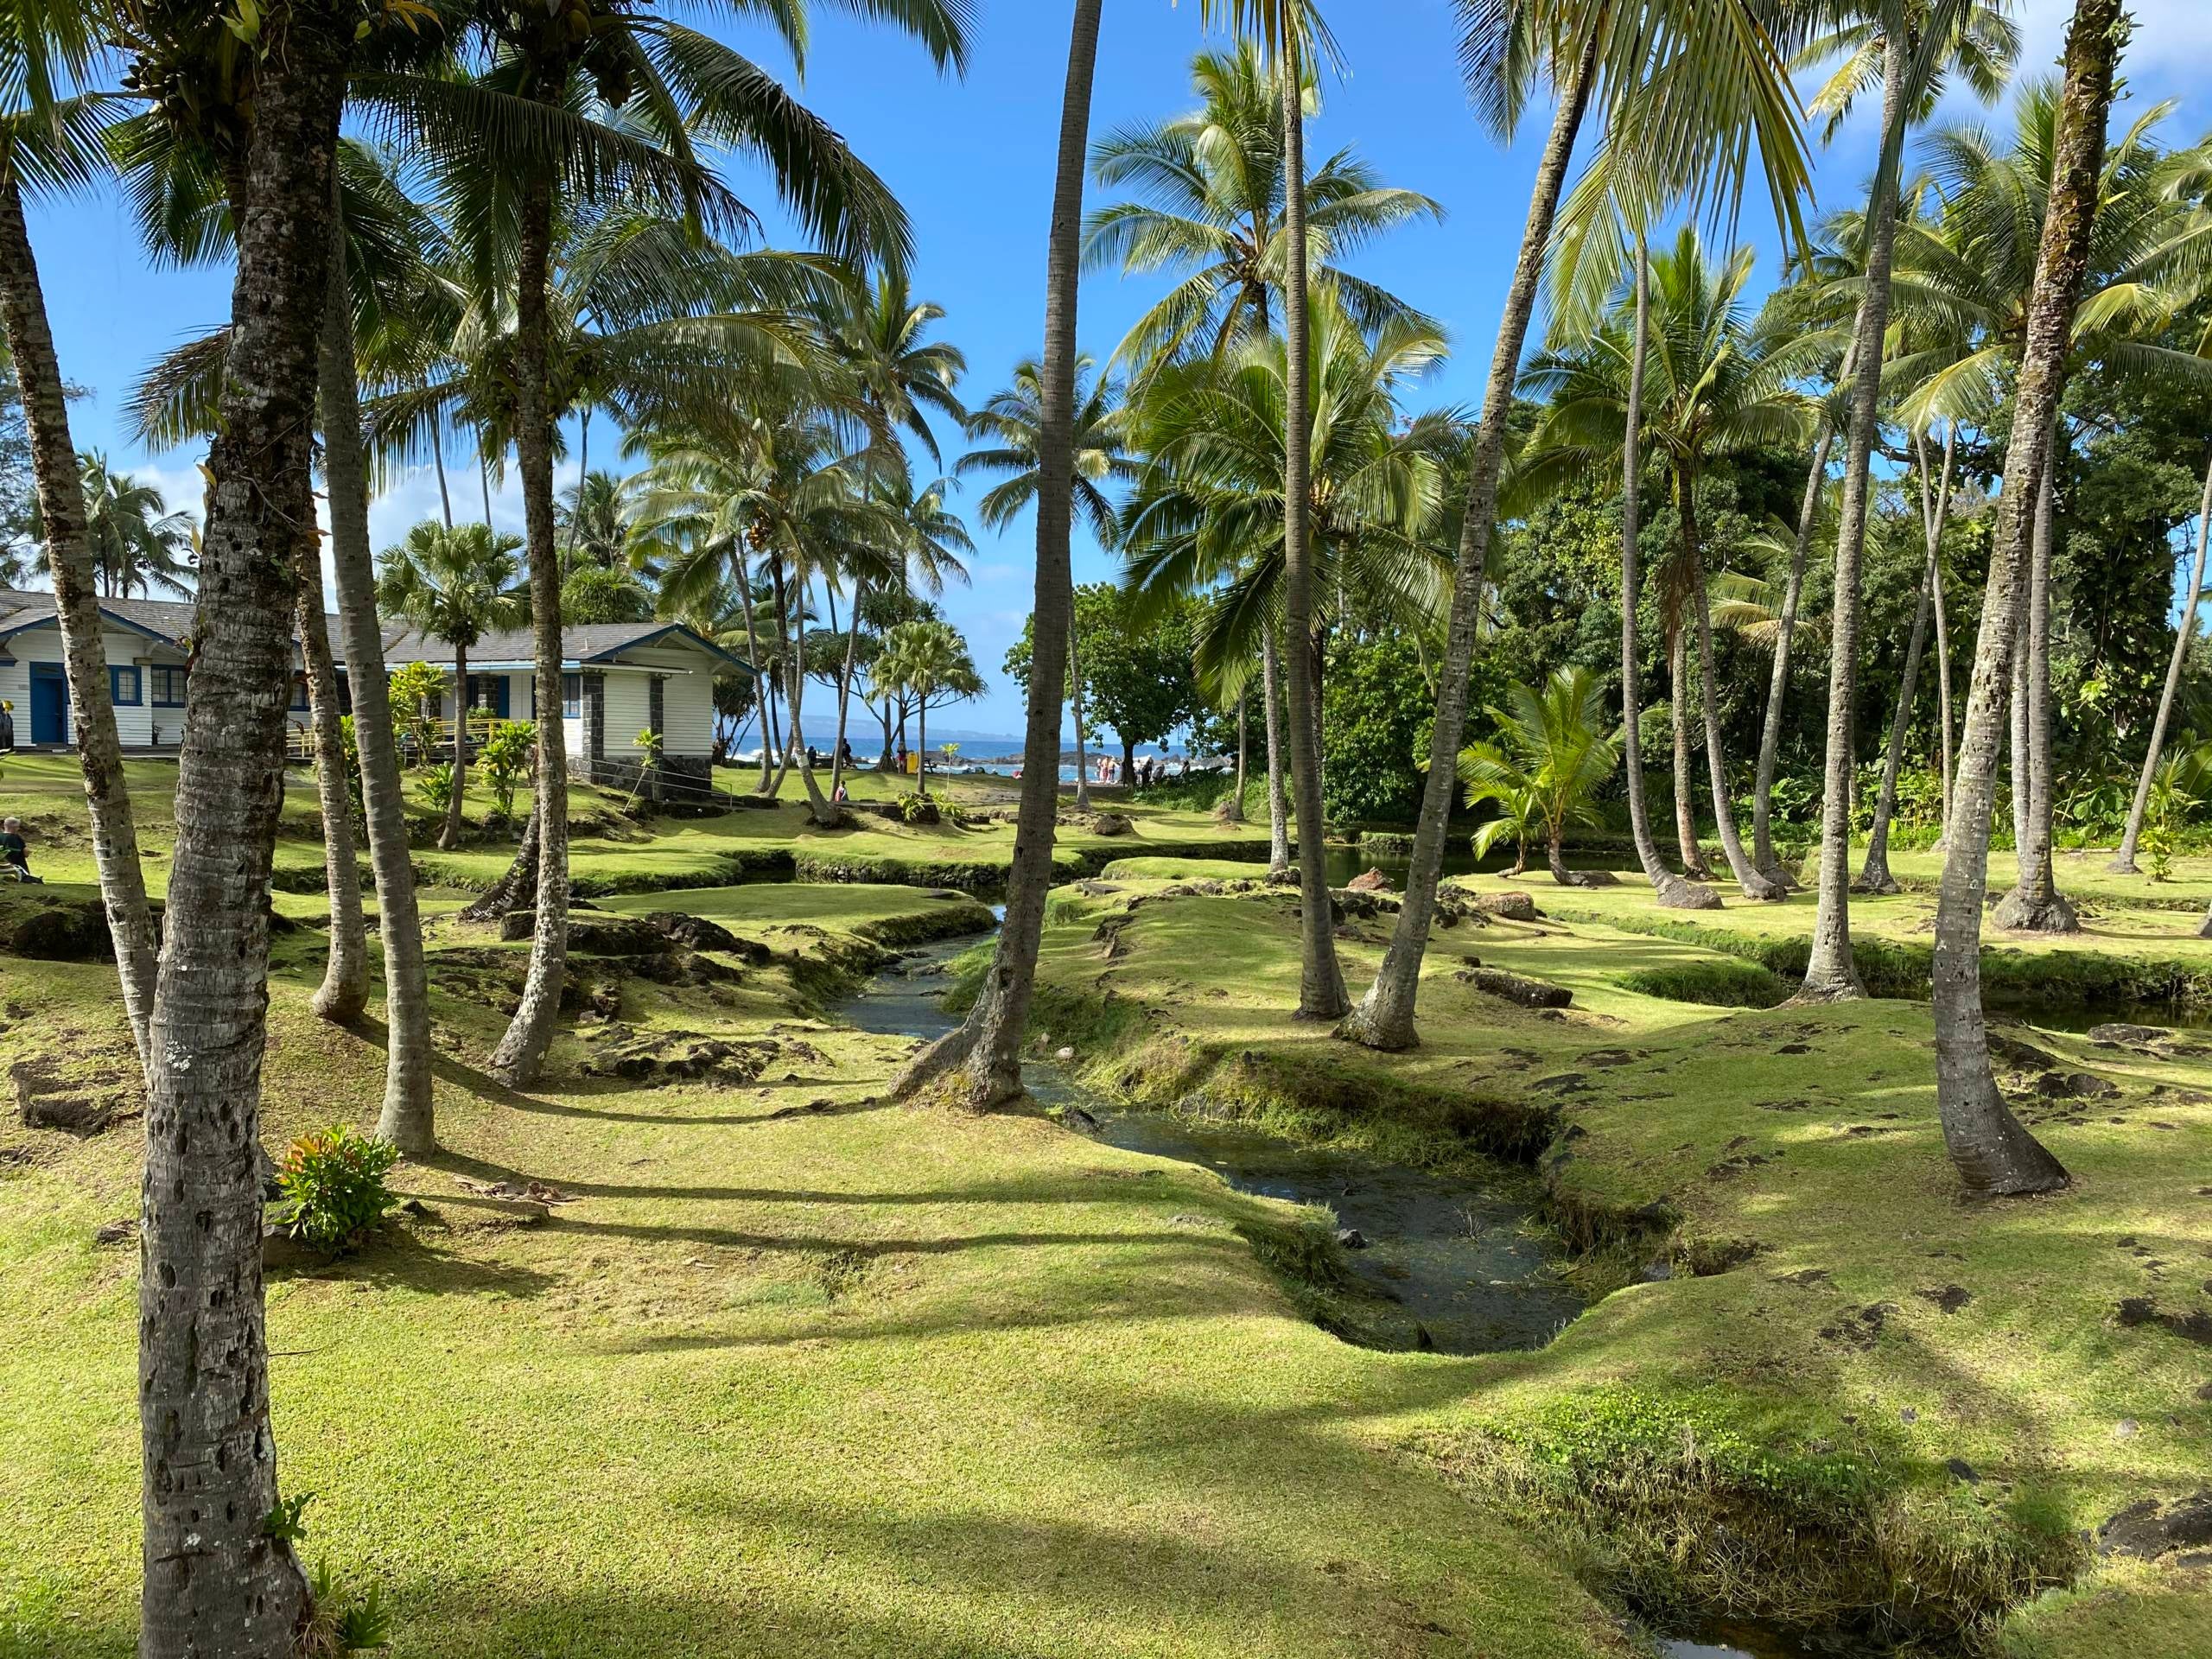  Les palmeraies sont une entrée paisible du parc Richardson Beach à Hilo. (crédit photo: 2DadsWithBaggage) 